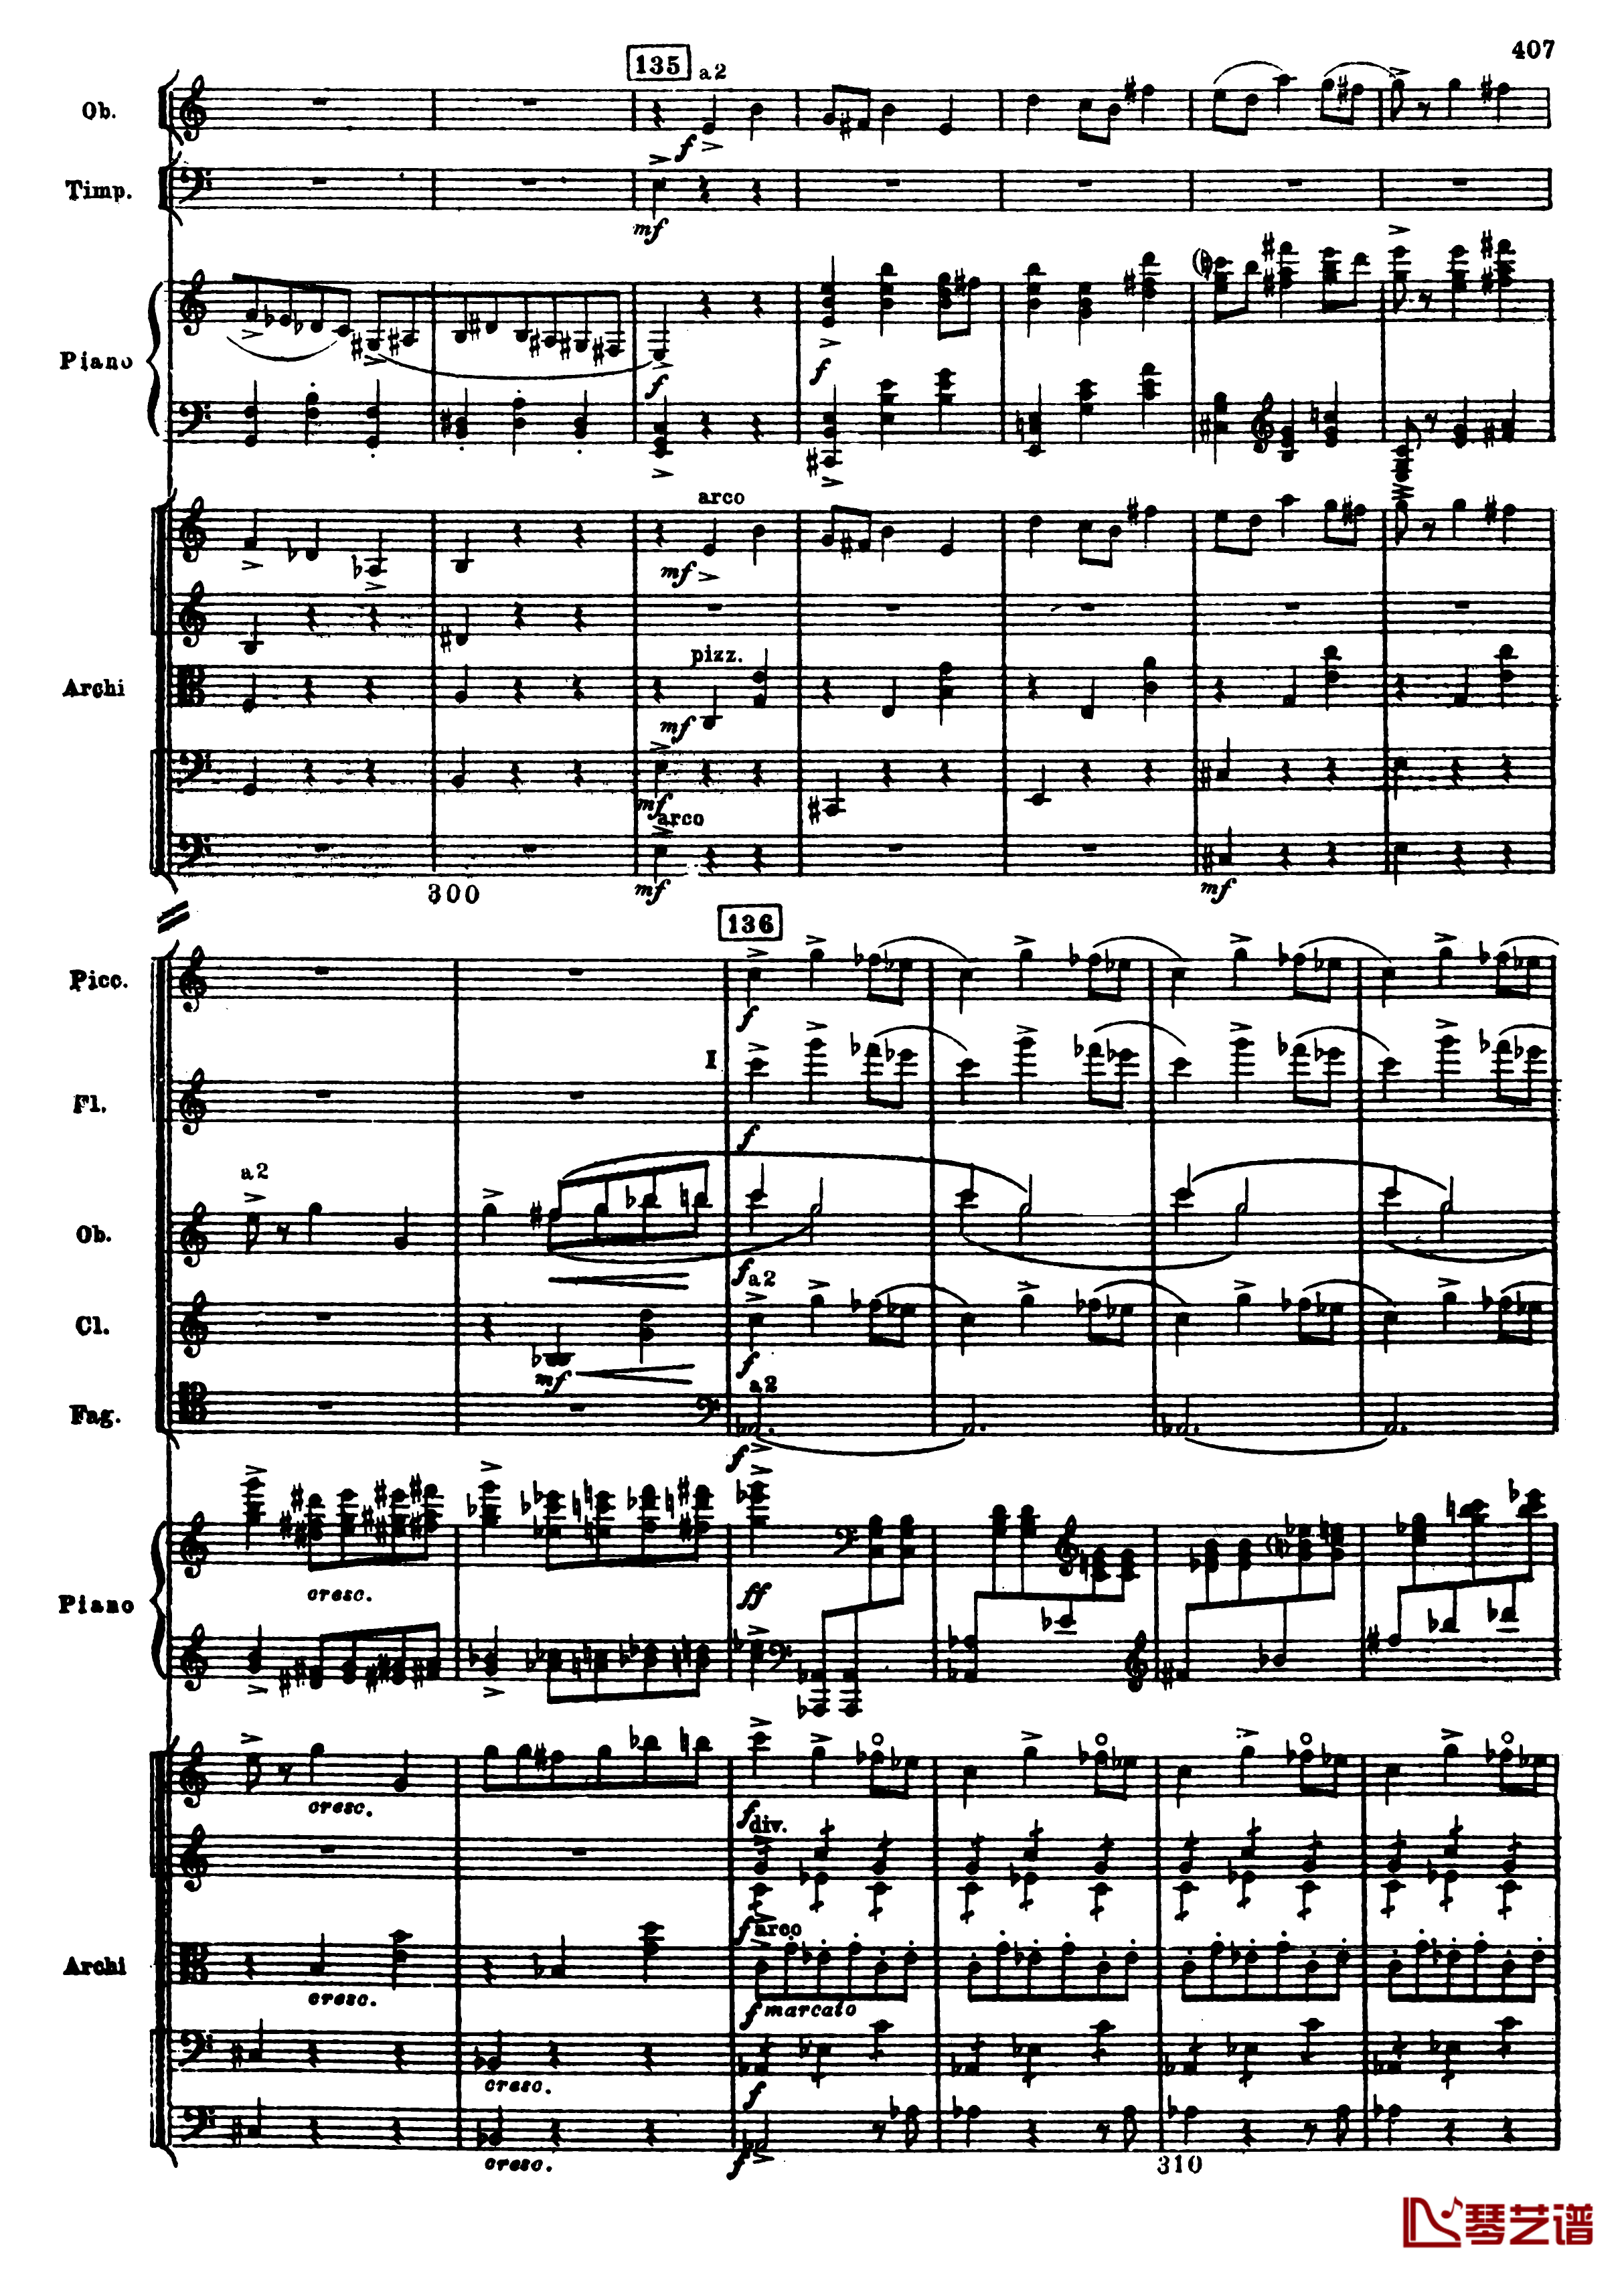 普罗科菲耶夫第三钢琴协奏曲钢琴谱-总谱-普罗科非耶夫139